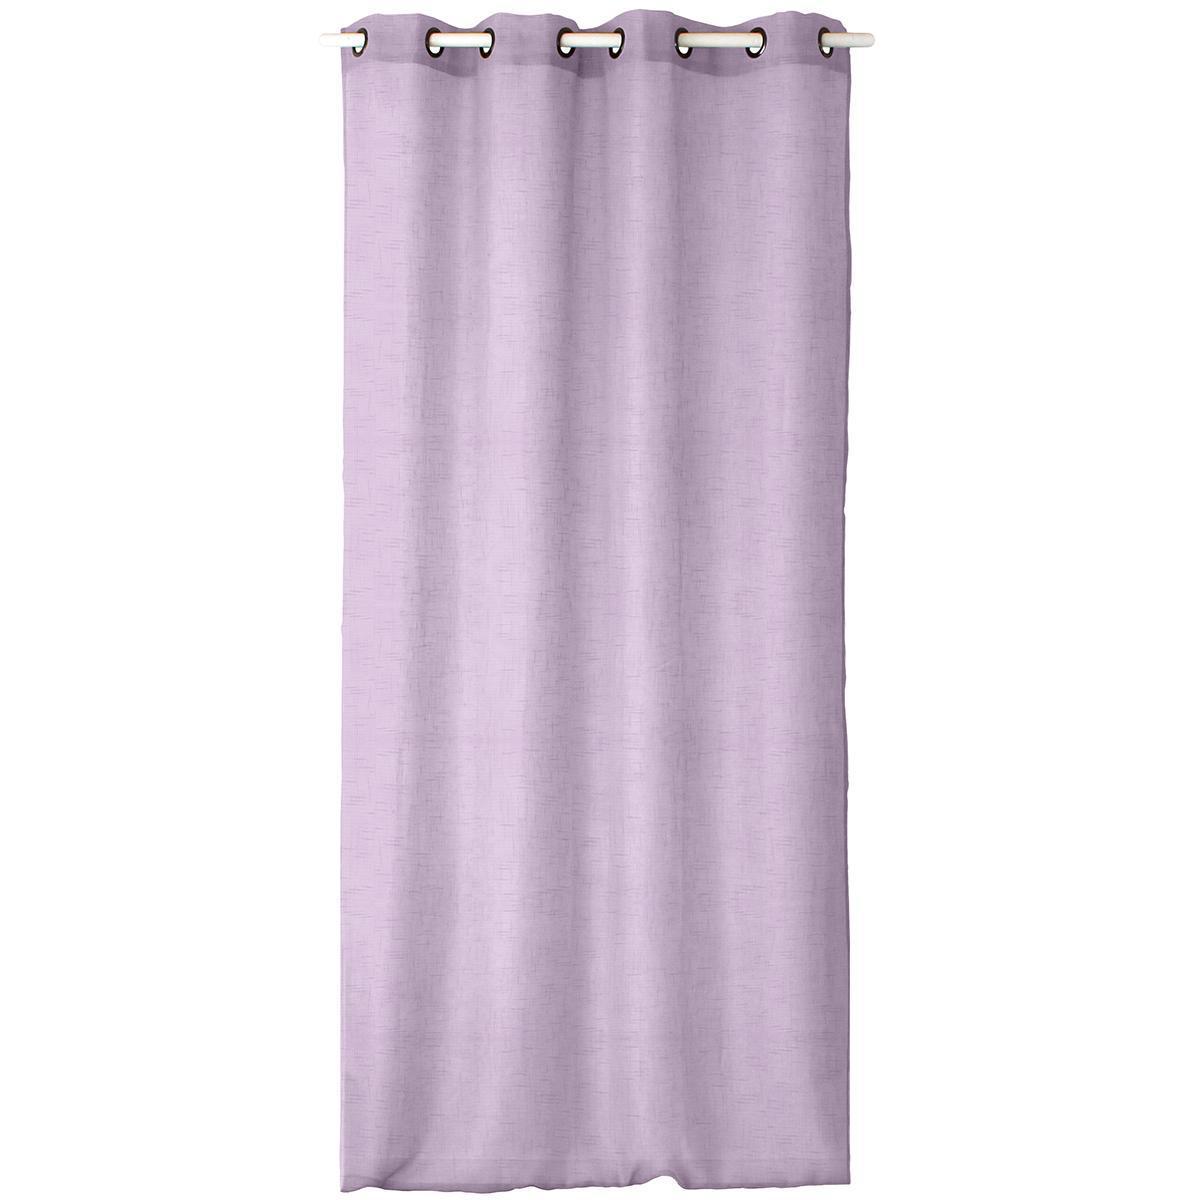 Panneau à œillets - 100% polyester - 140 x 240 cm - Violet parme